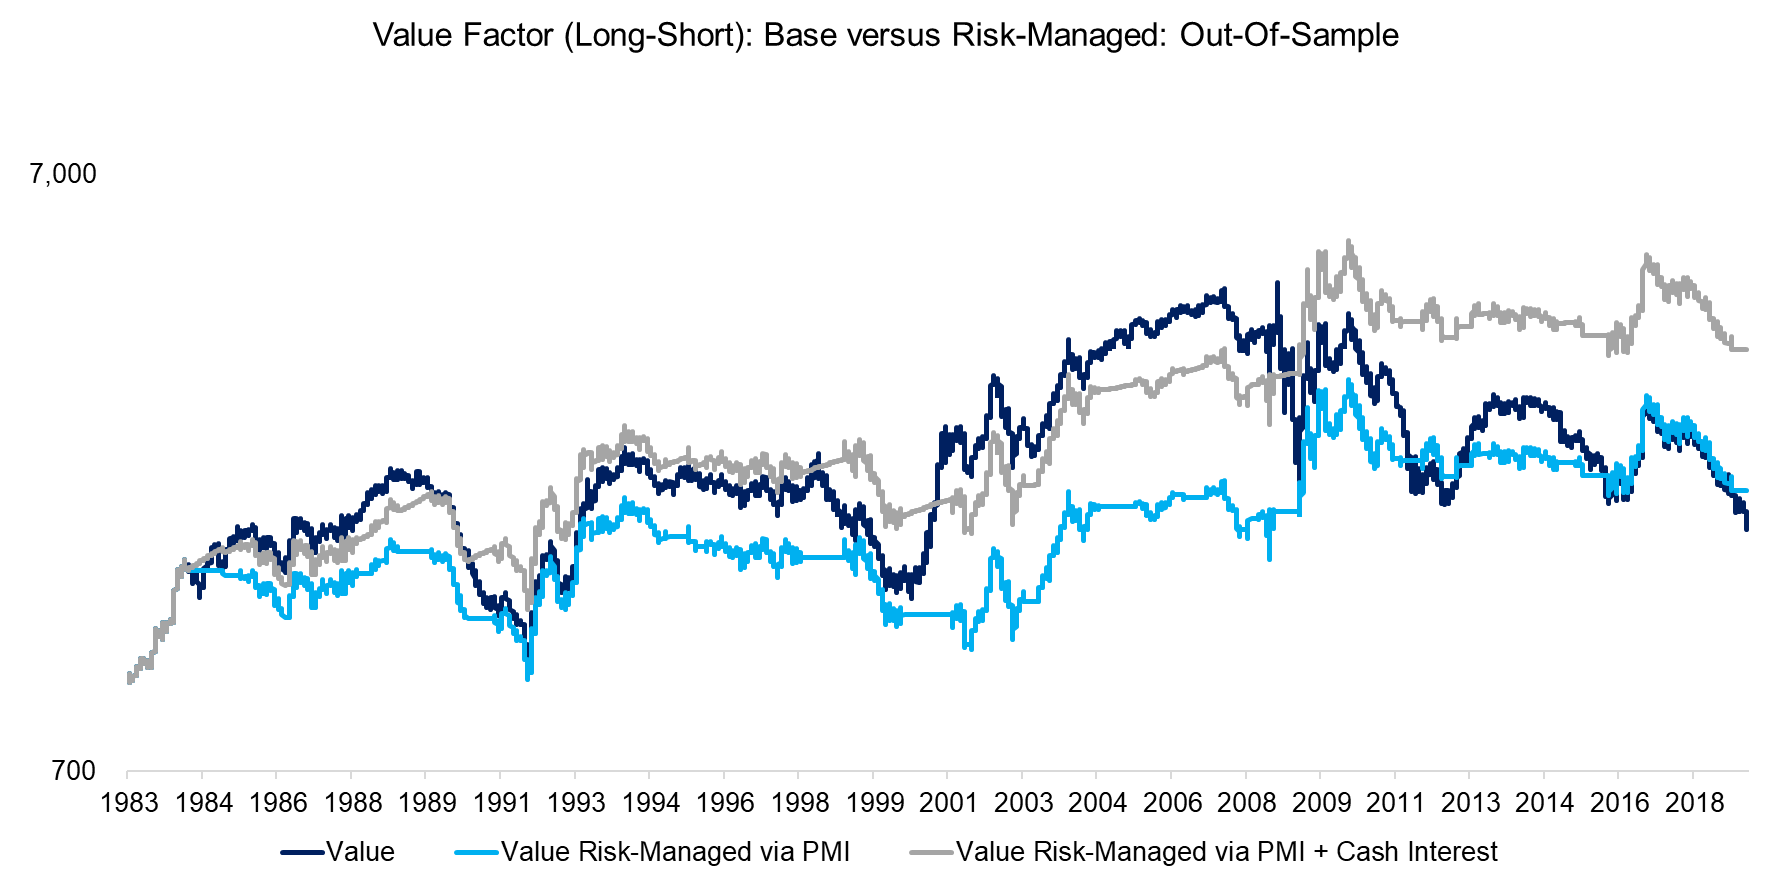 Value Factor (Long-Short) Base versus Risk-Managed Out-Of-Sample